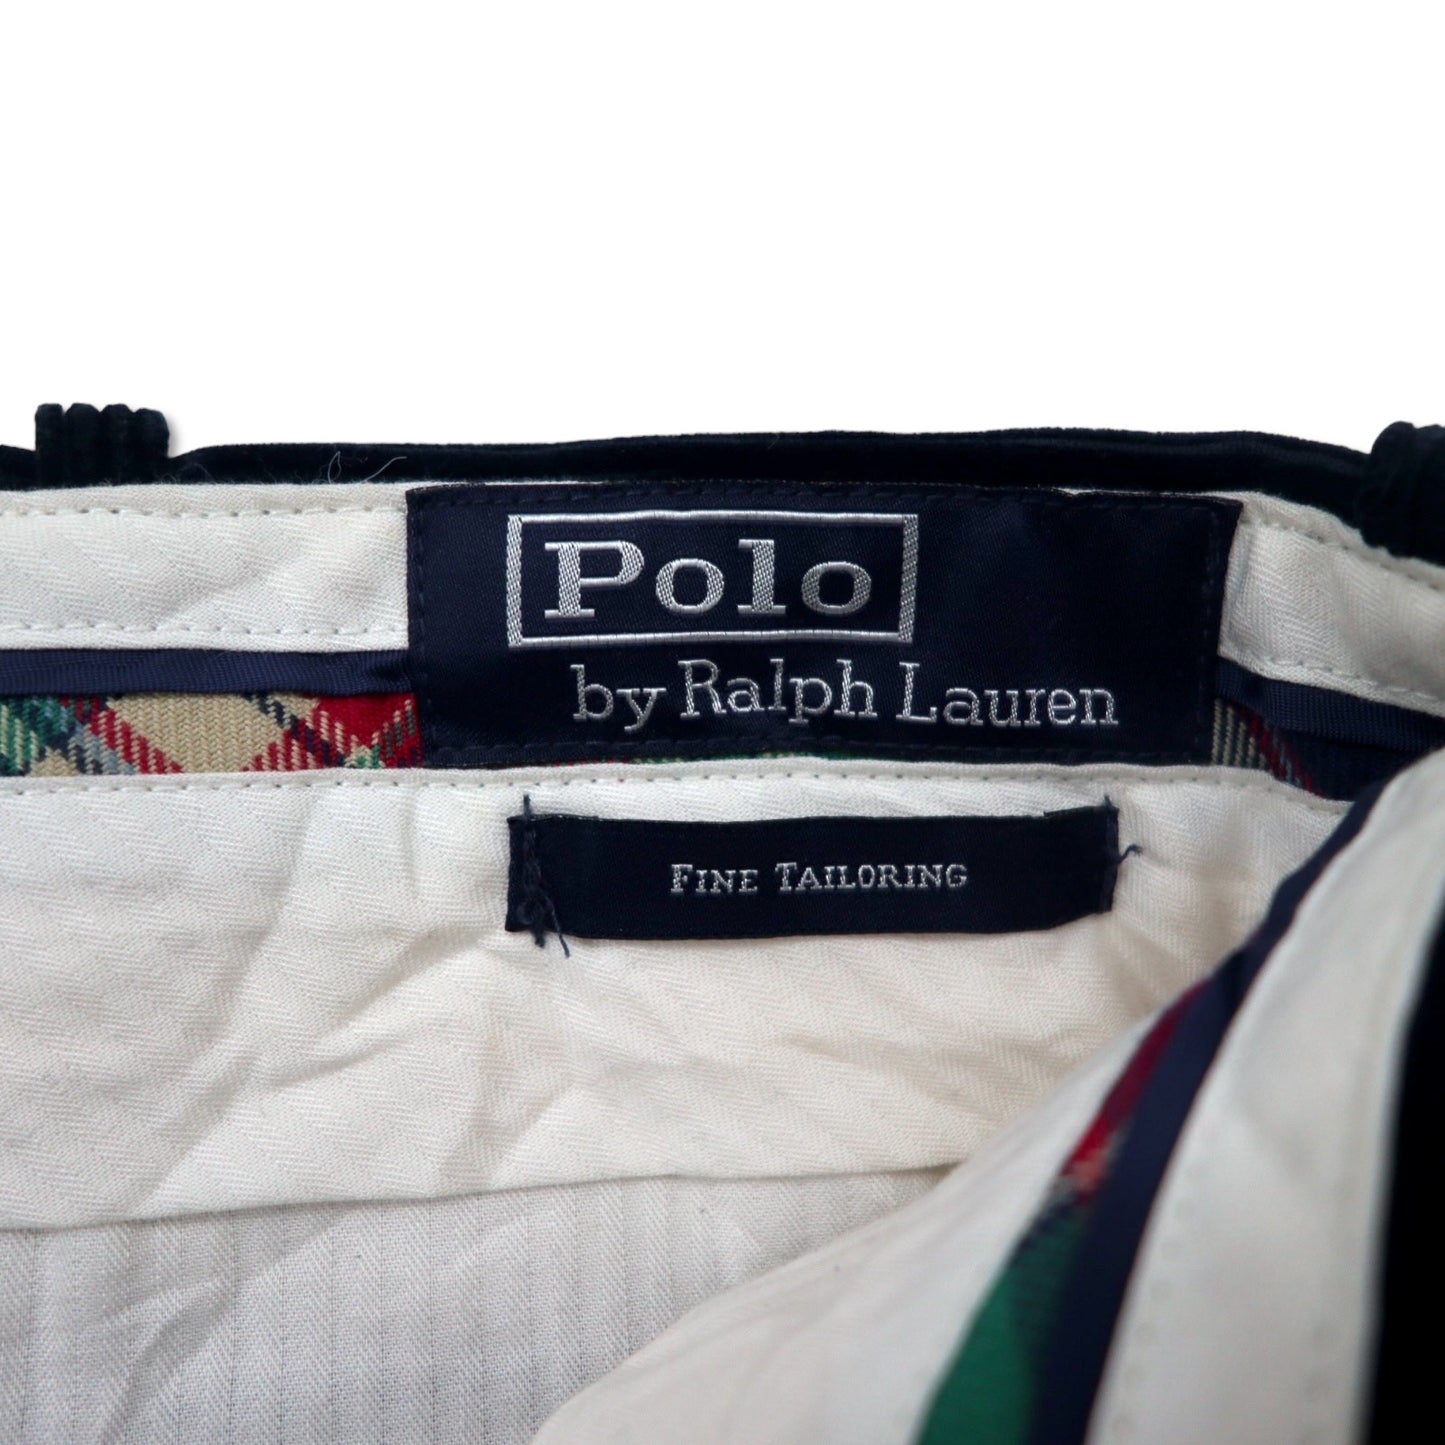 Polo by Ralph Lauren ワイド コーデュロイパンツ 40 ネイビー コットン FINE TAILORING スリランカ製